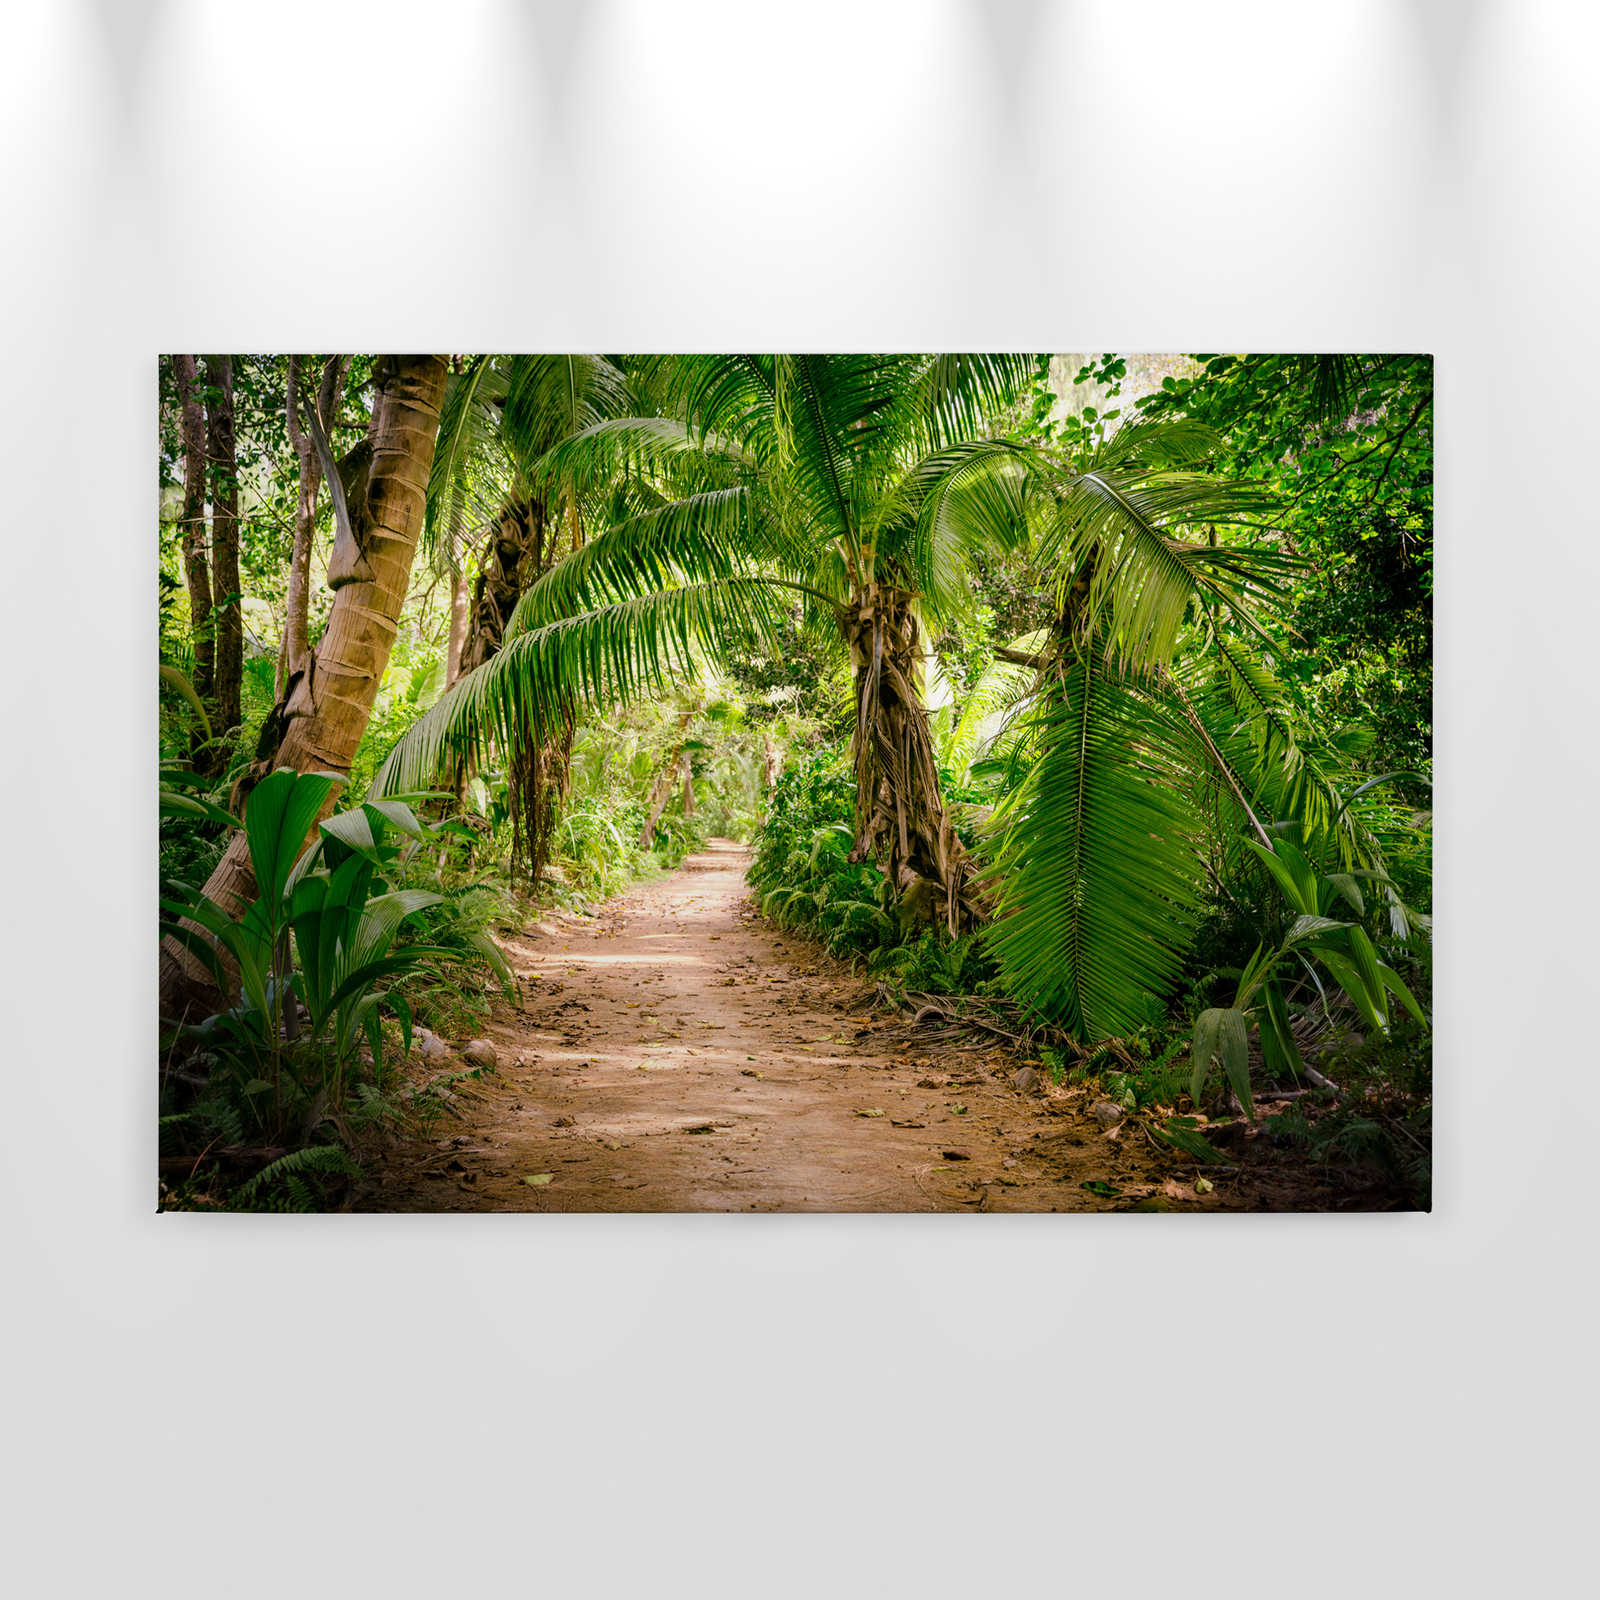             Toile avec chemin de palmiers à travers un paysage tropical - 0,90 m x 0,60 m
        